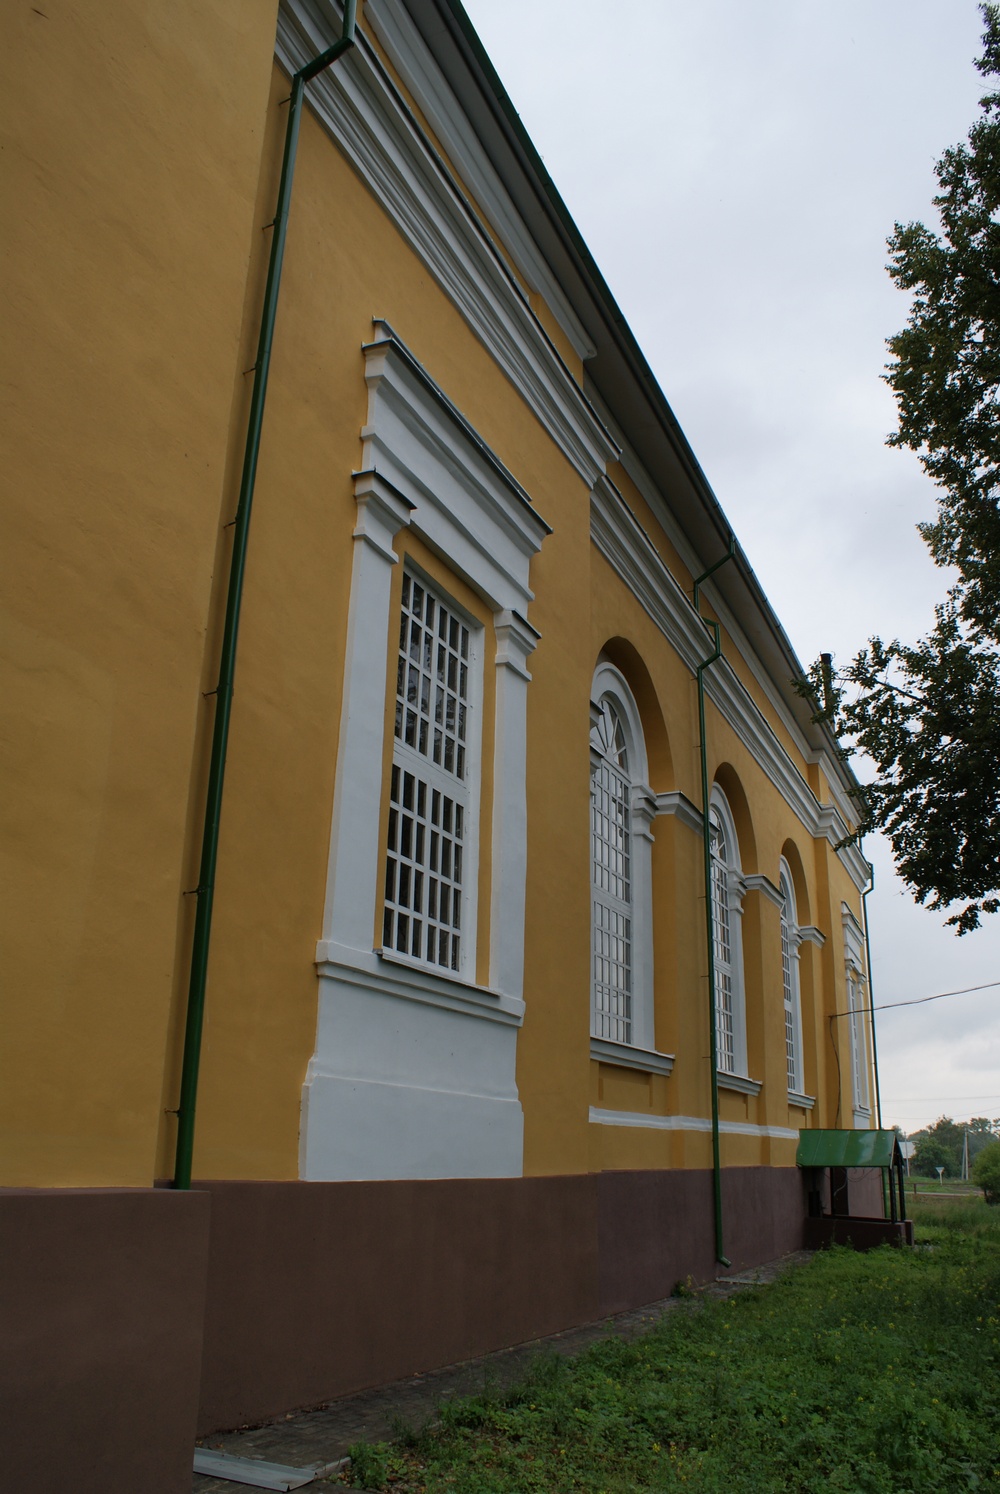 Церковь Преображения, село Мазунино, Сарапульский район Удмуртской Республики